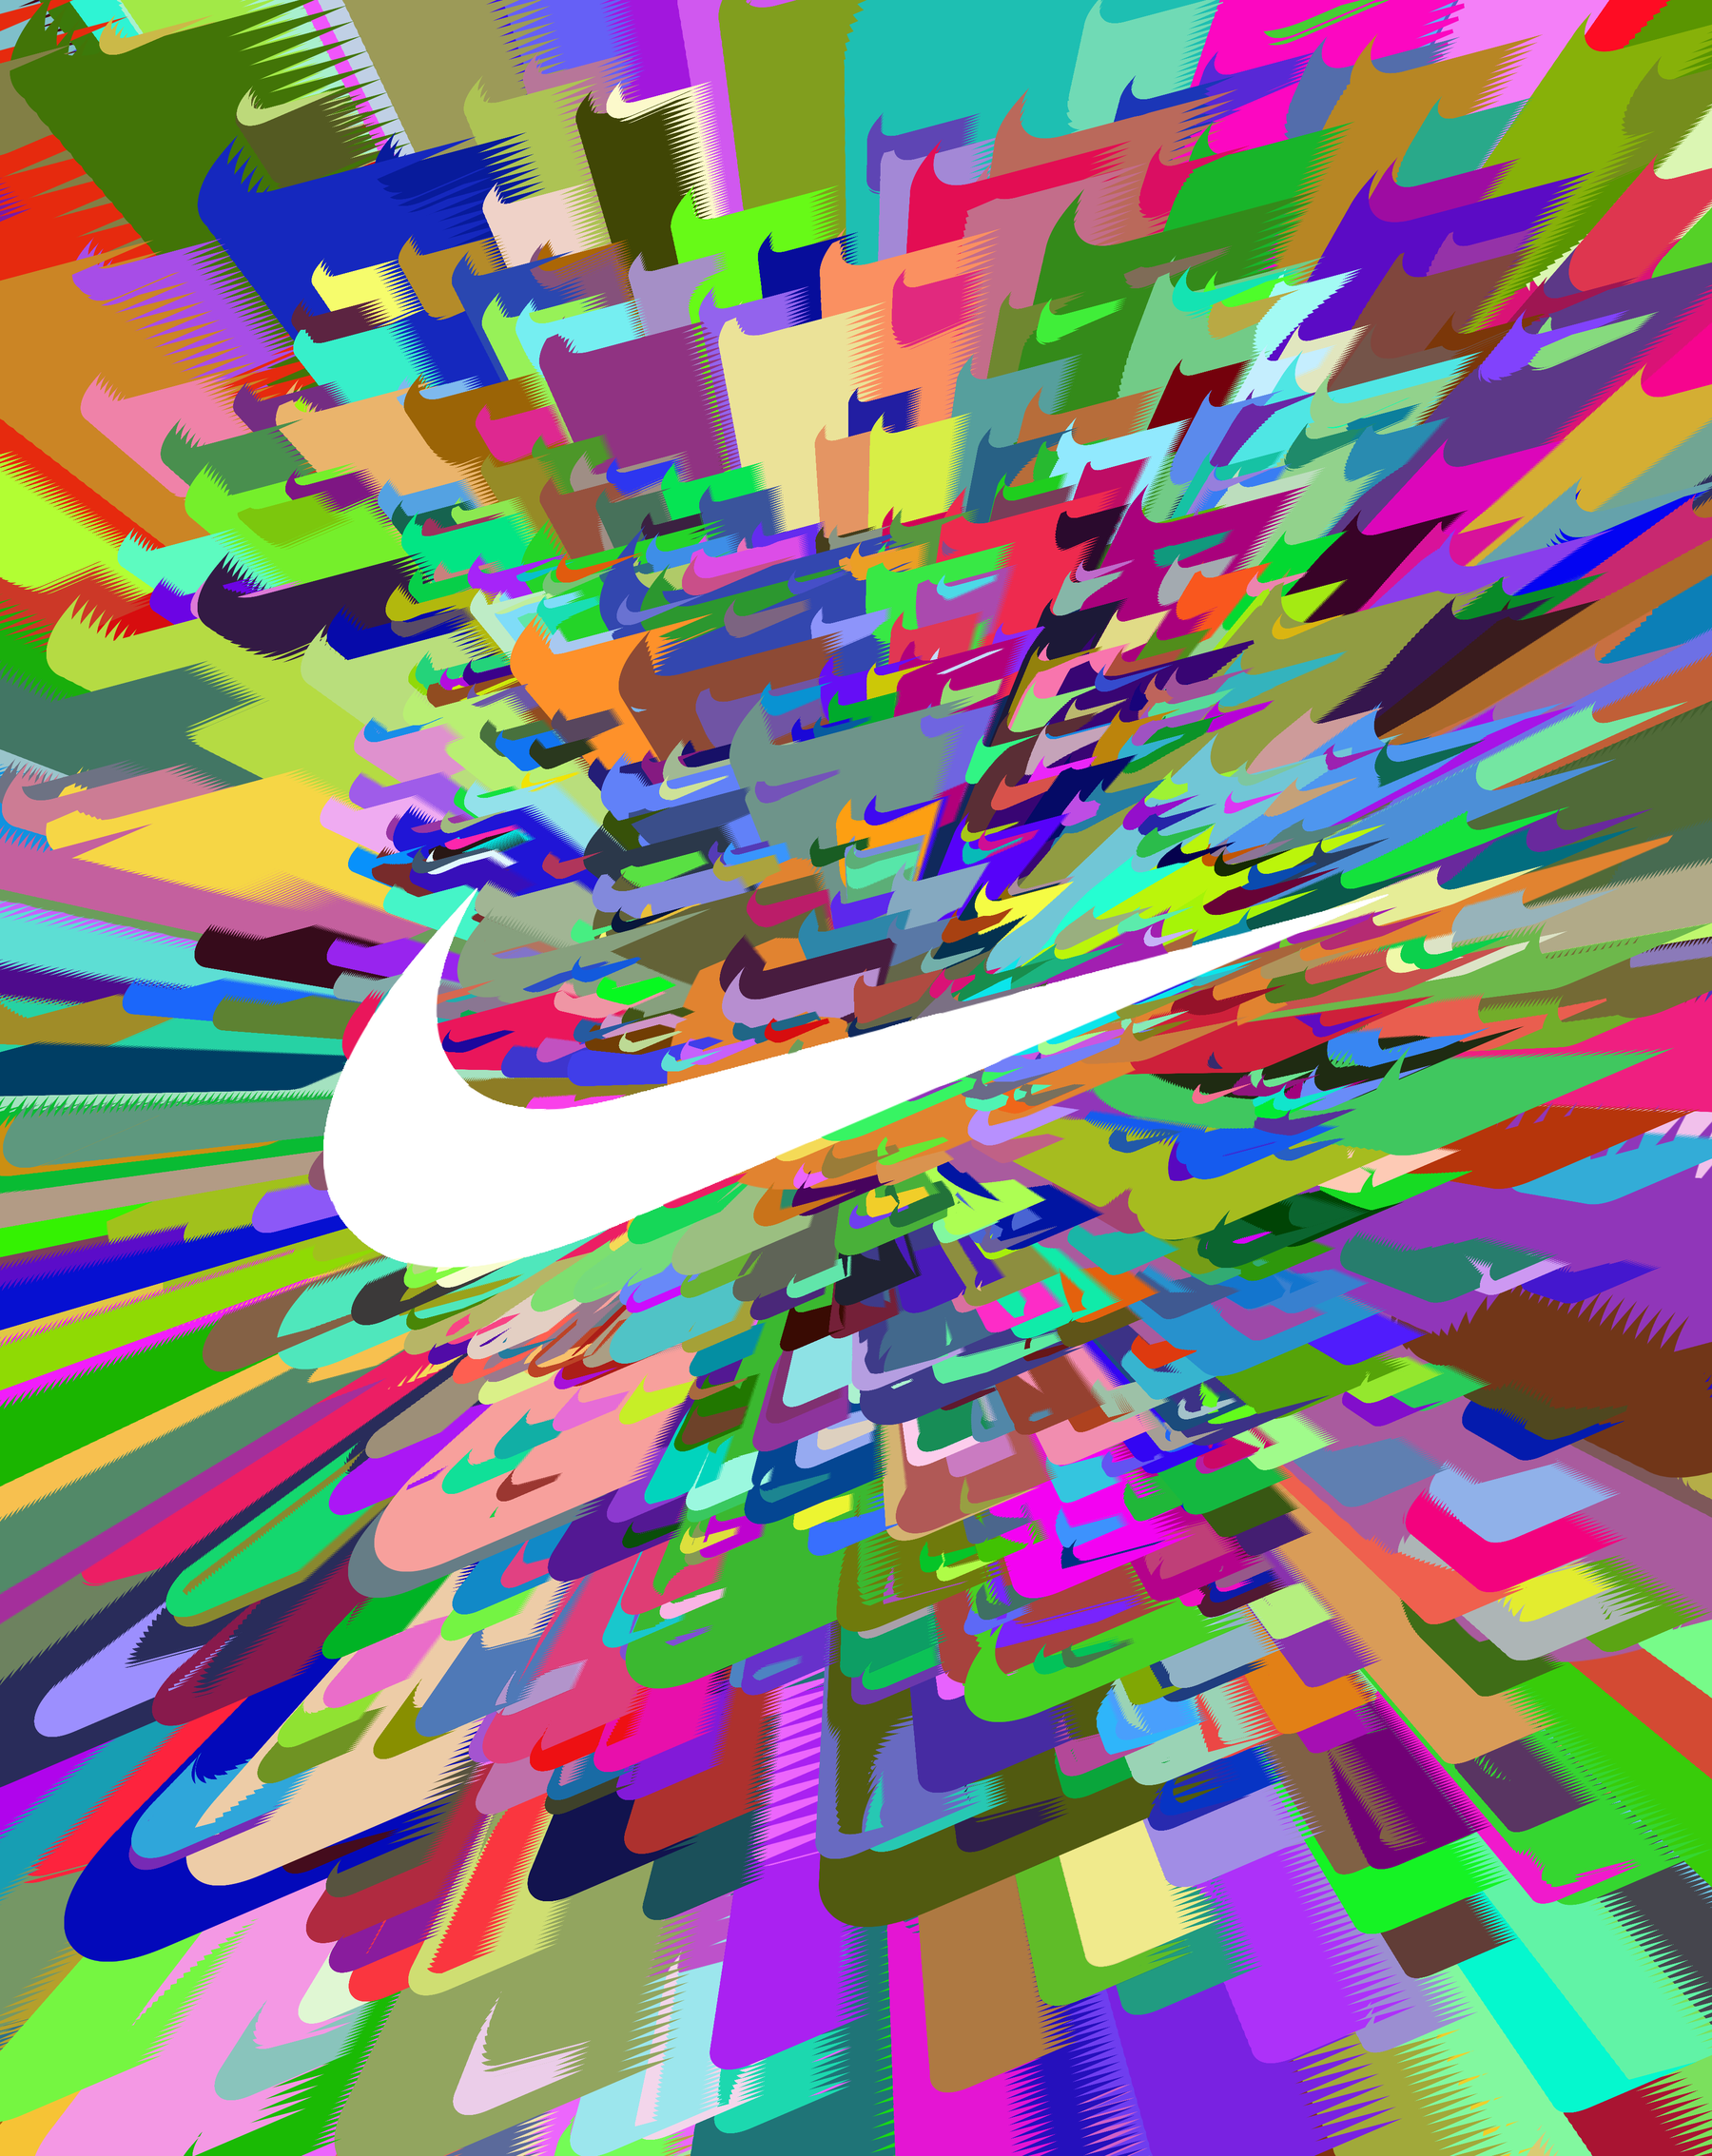 How Nike Won the Cultural Marathon